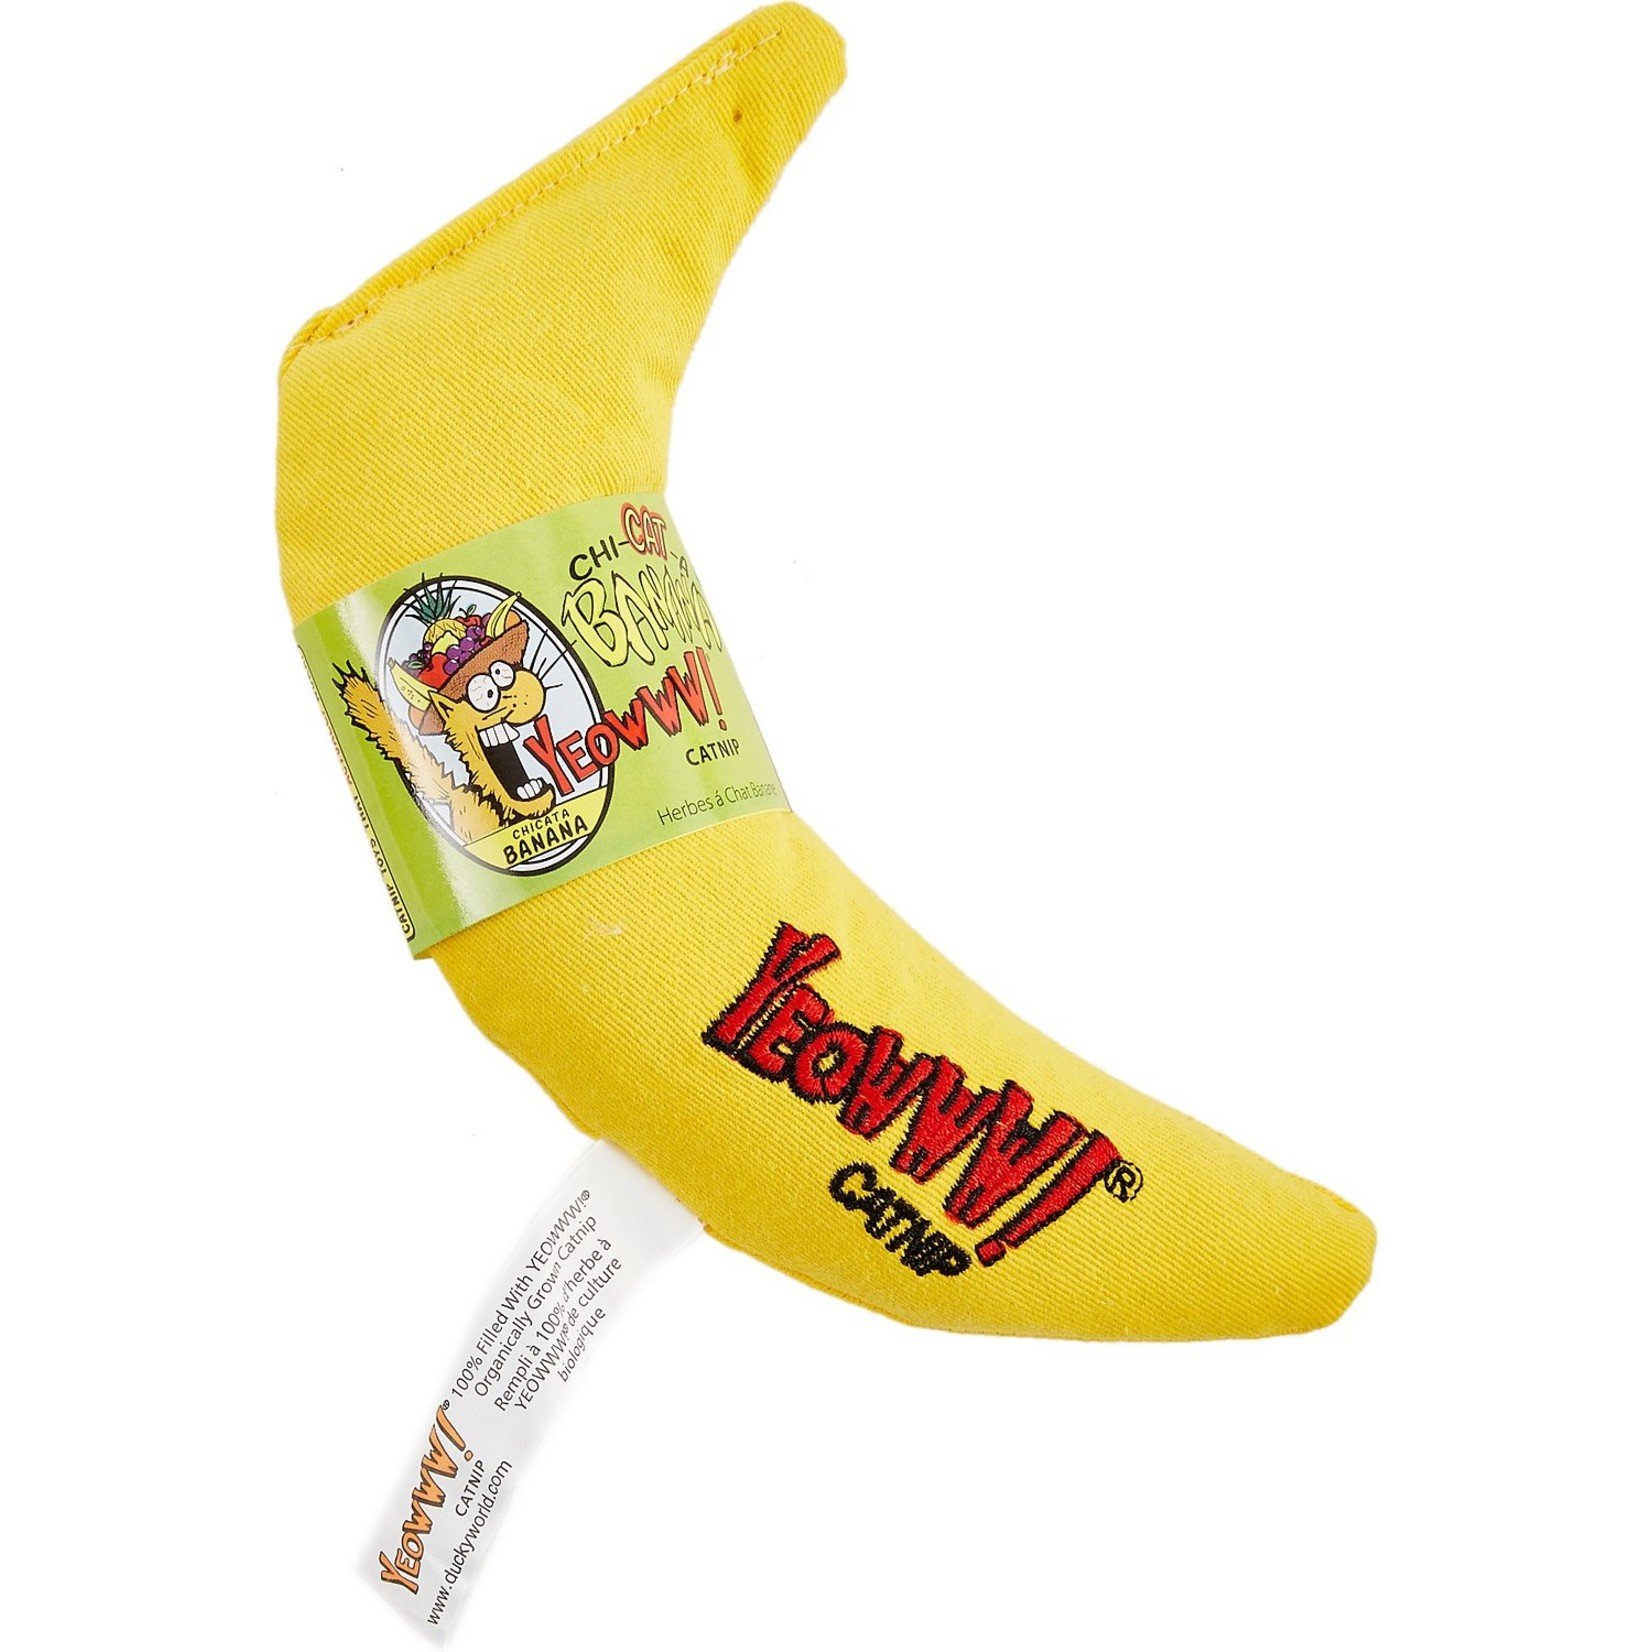 Yeowww! Catnip Yeowww! Catnip Chi-CAT-a Banana Toy